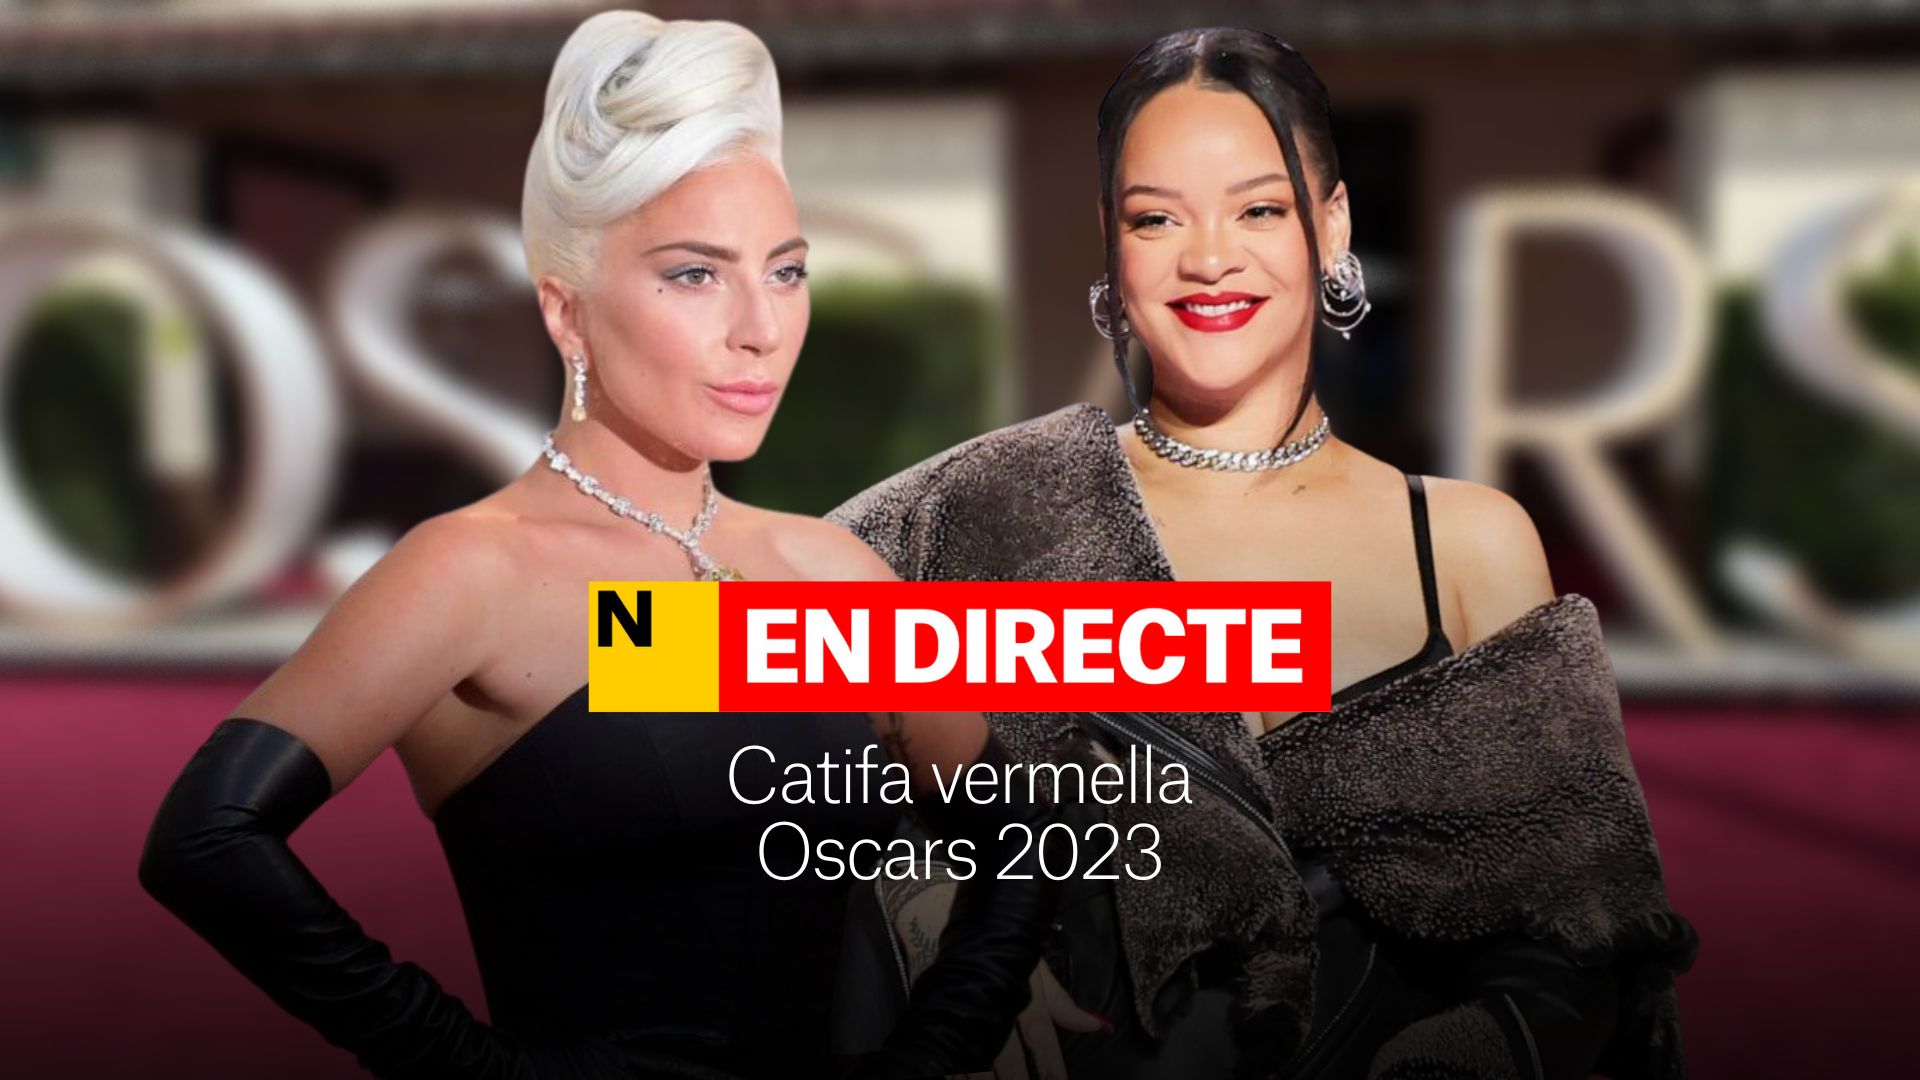 Catifa vermella dels Oscars 2023, EN DIRECTE | Última hora dels vestits i celebritats